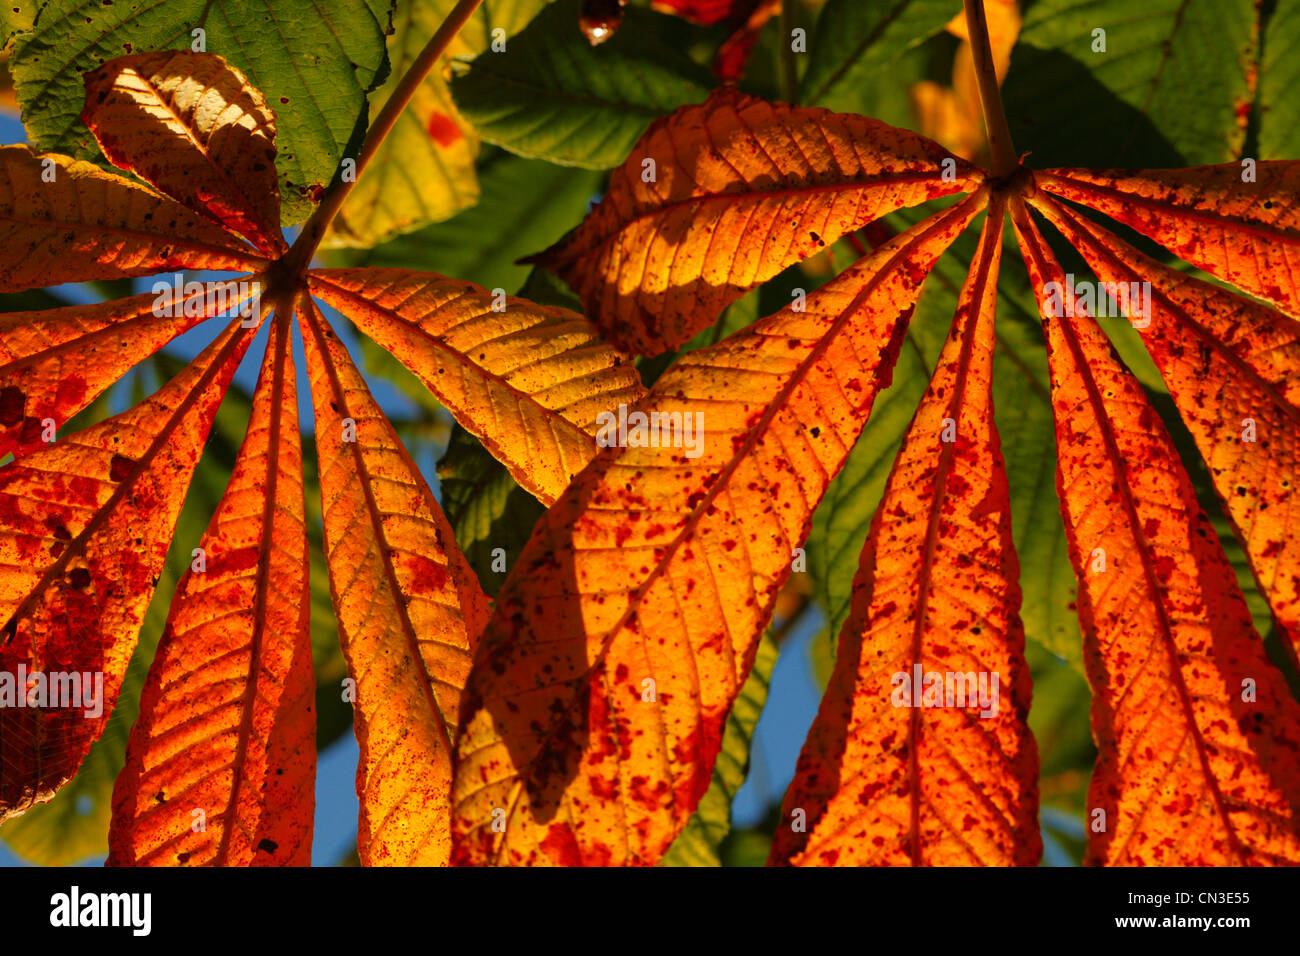 Les feuilles d'automne de Marronnier (Aesculus hippocastanum). Powys, Pays de Galles. Octobre. Banque D'Images